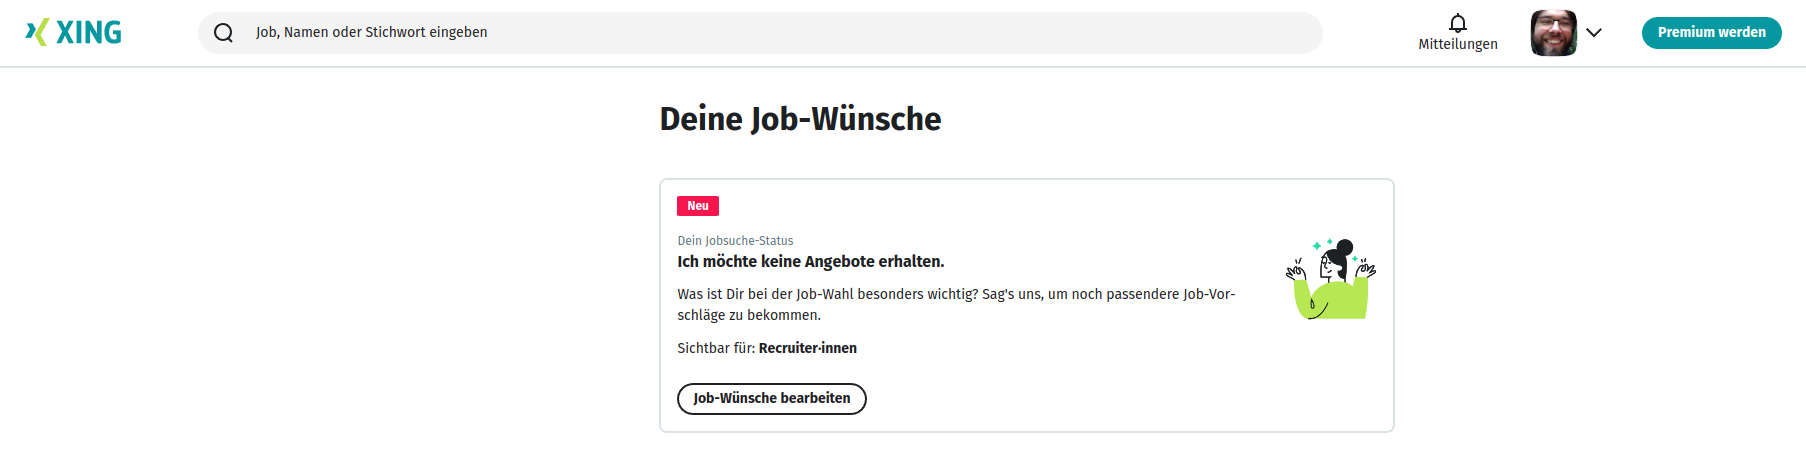 XING-Profile "Deine Job-Wünsche": Ich möchte KEINE Angebote erhalten.